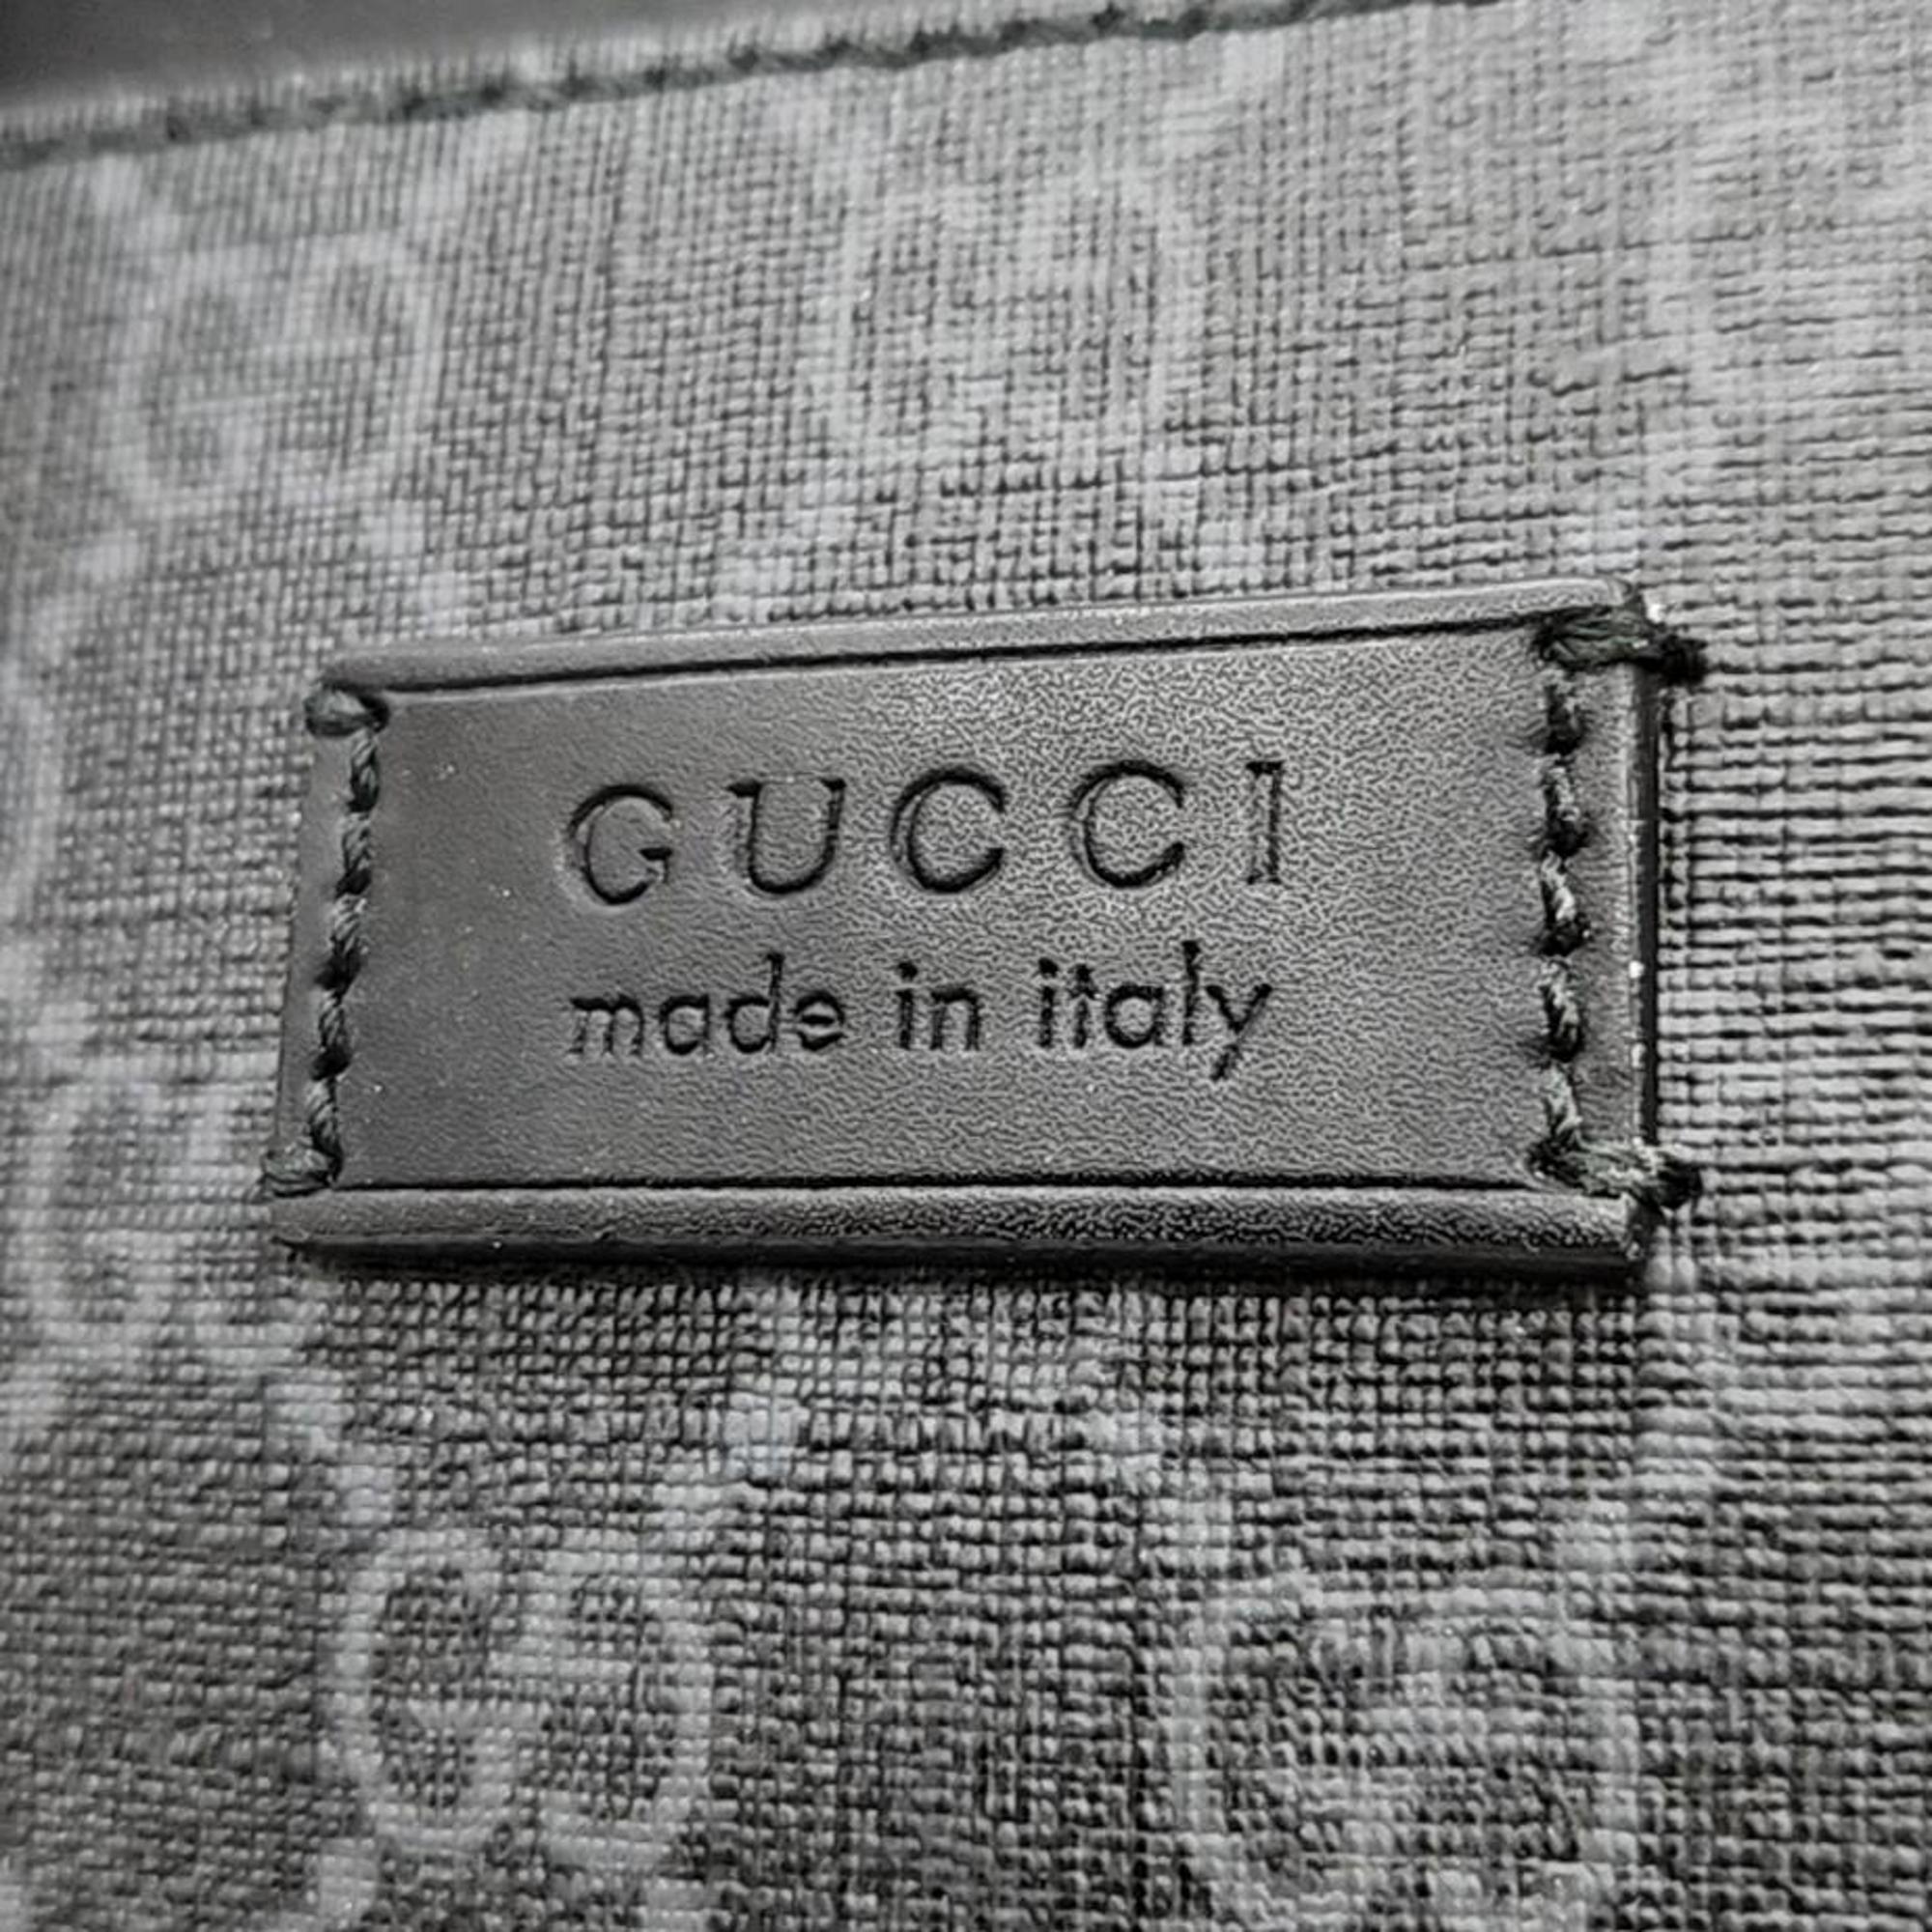 Gucci Black PVC Briefcase (474135)